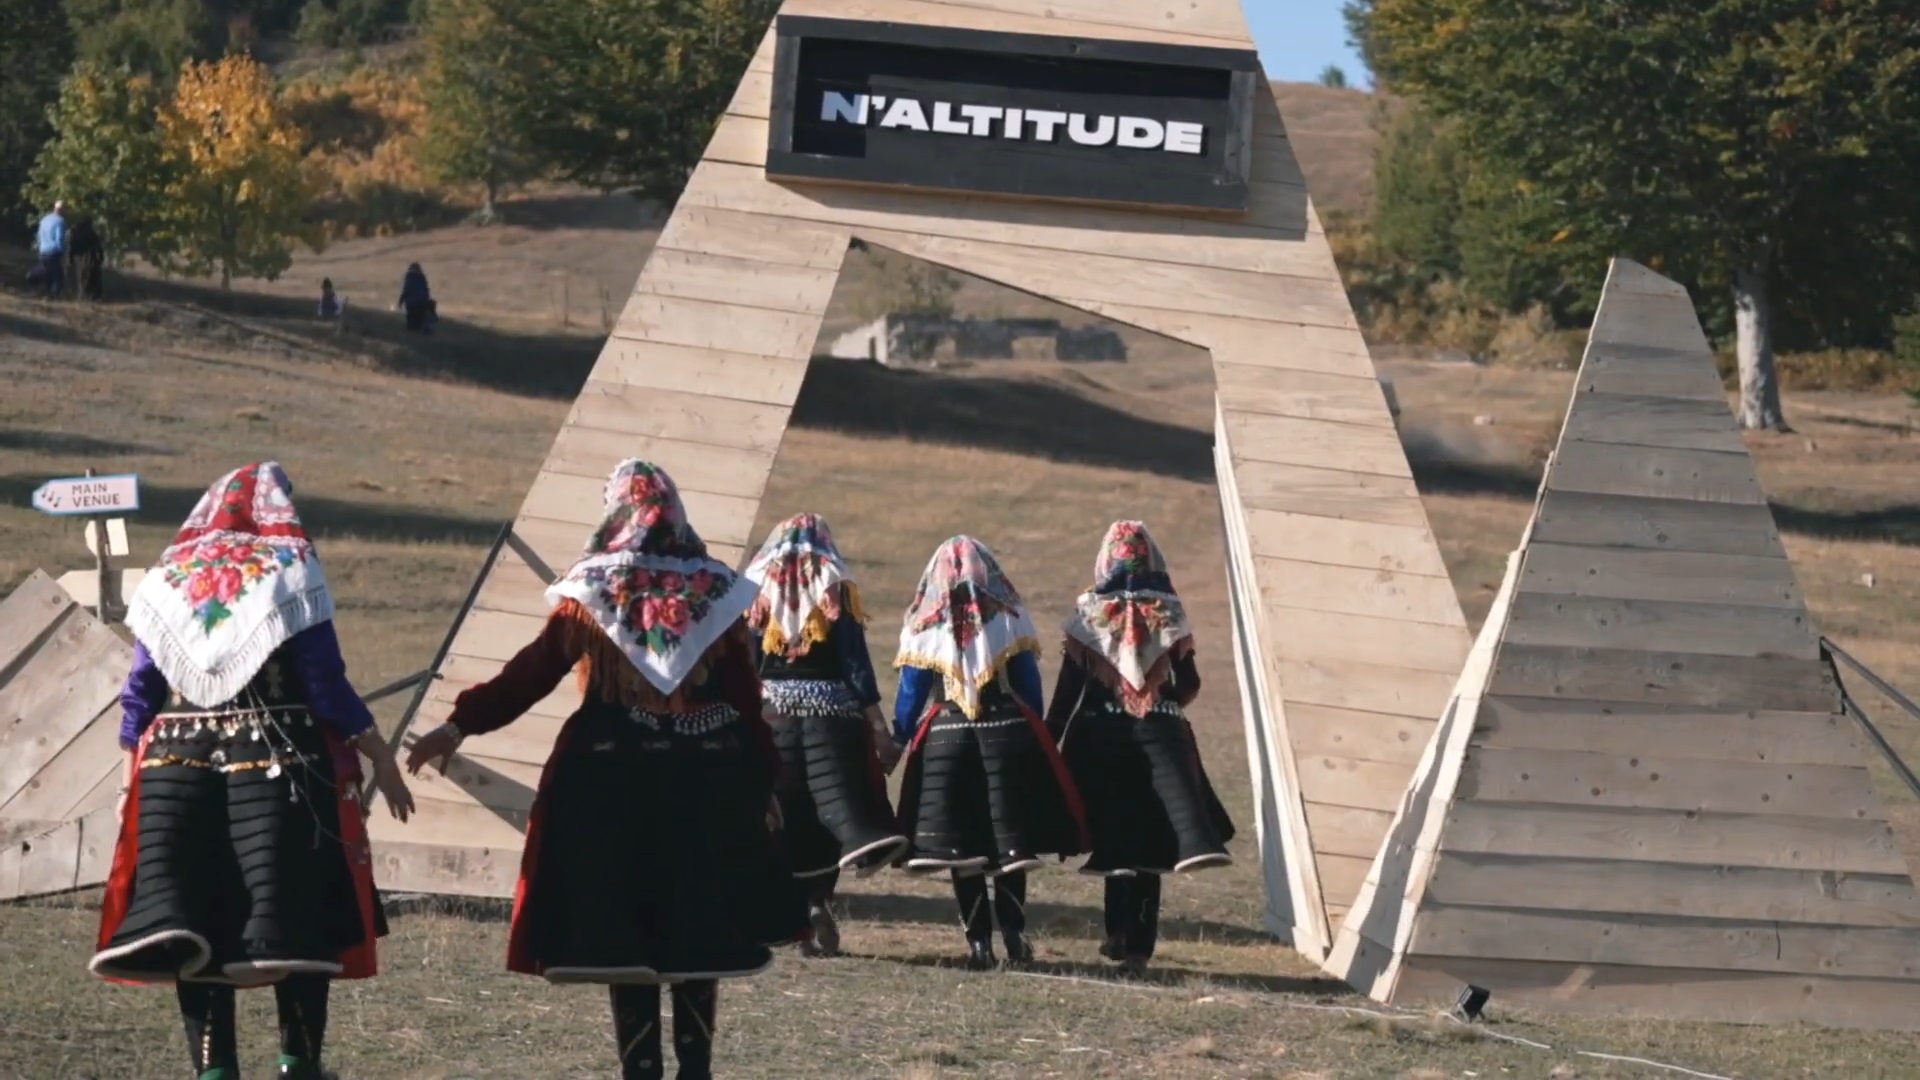 Standbild aus dem Video über das N'Altitude Festival 2021 in Albanien